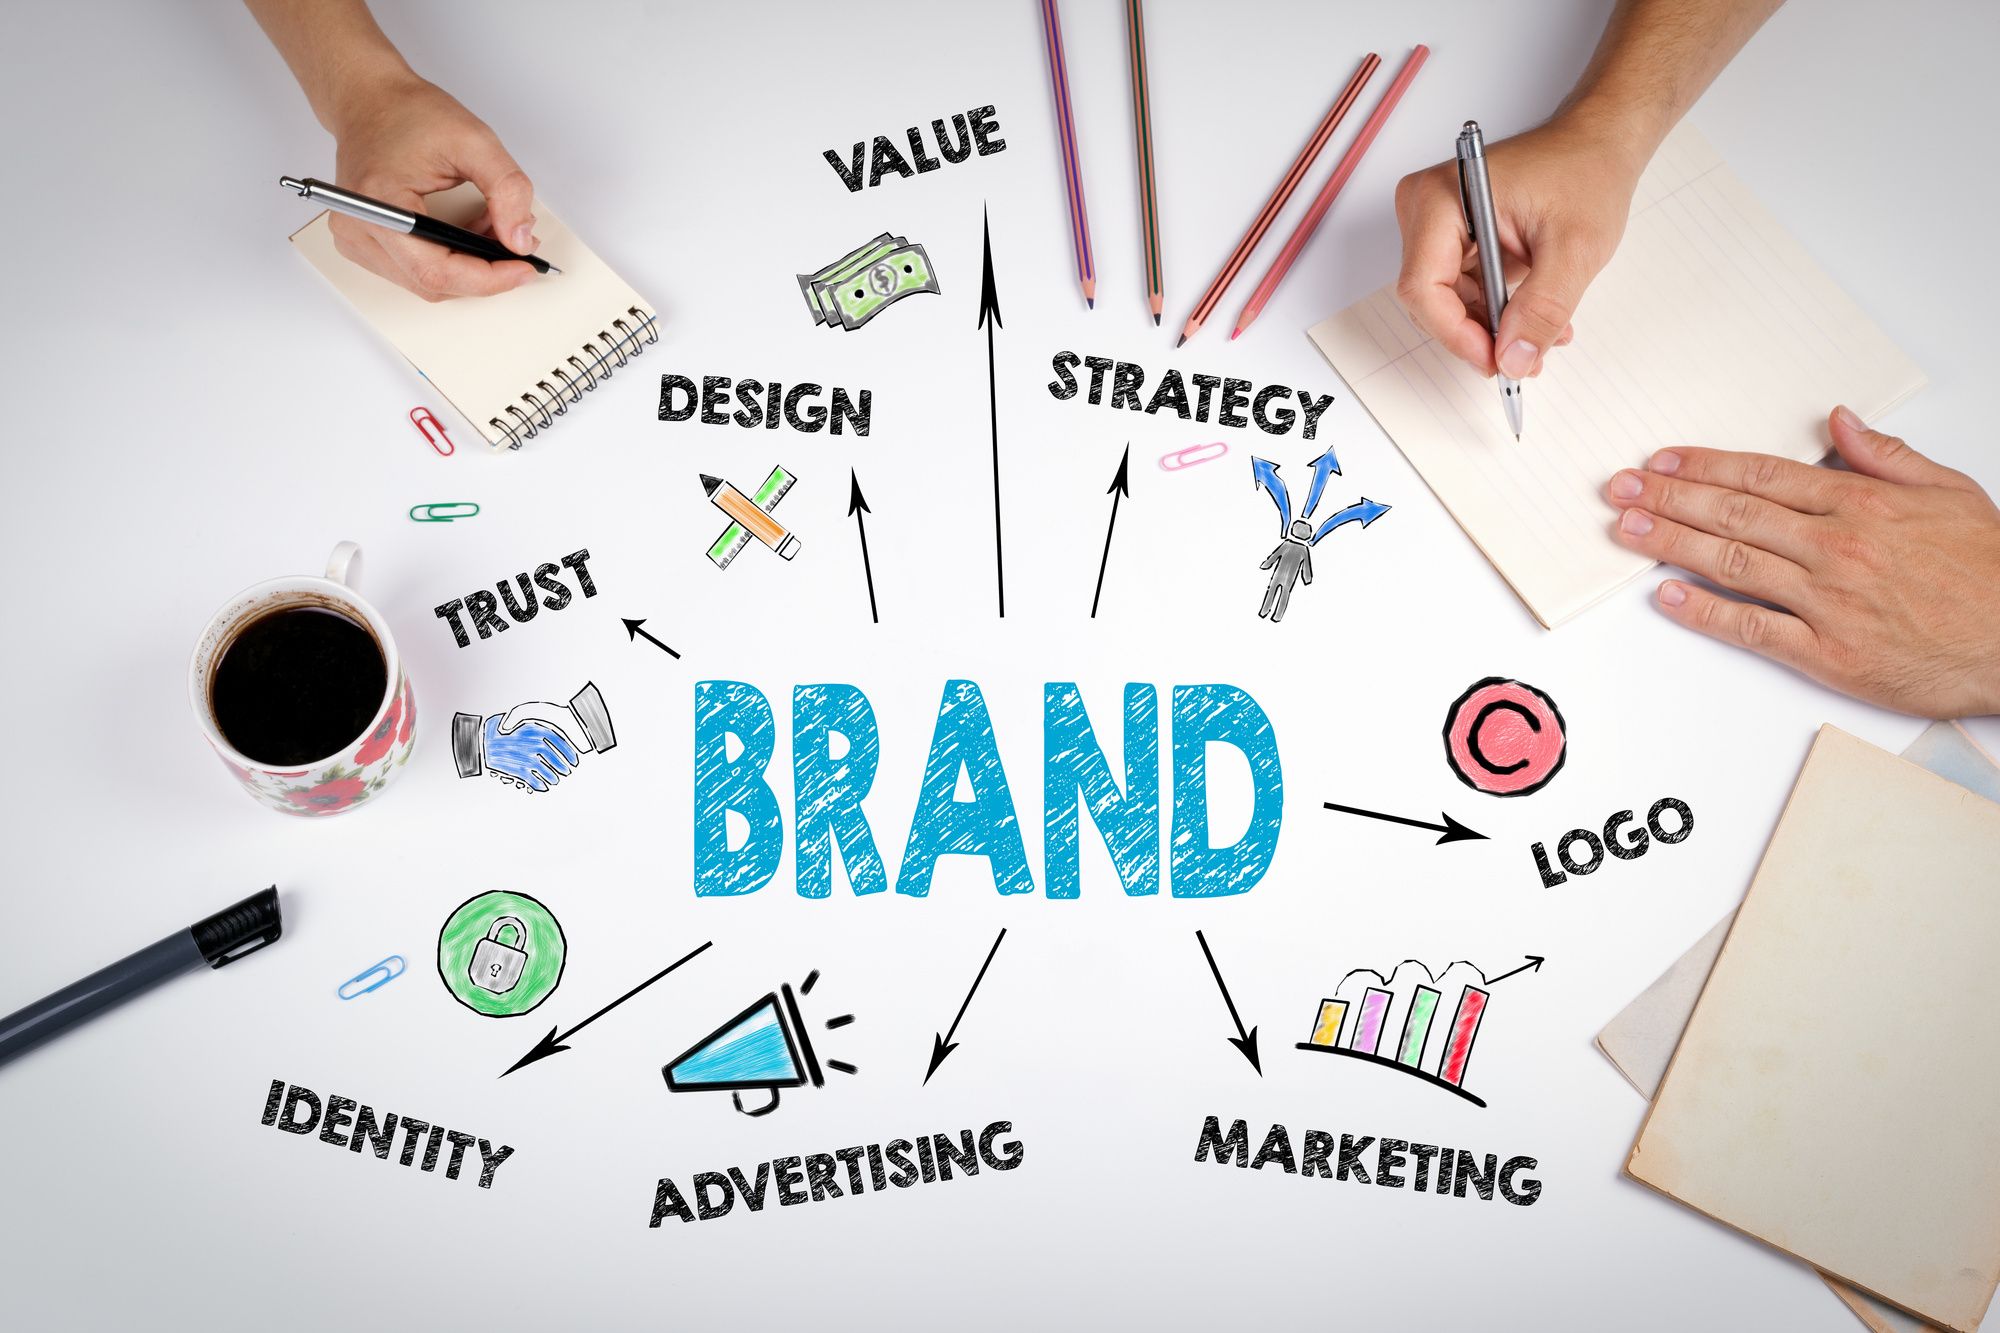 Branding giúp tăng độ nhận diện thương hiệu trong nhận thức của khách hàng